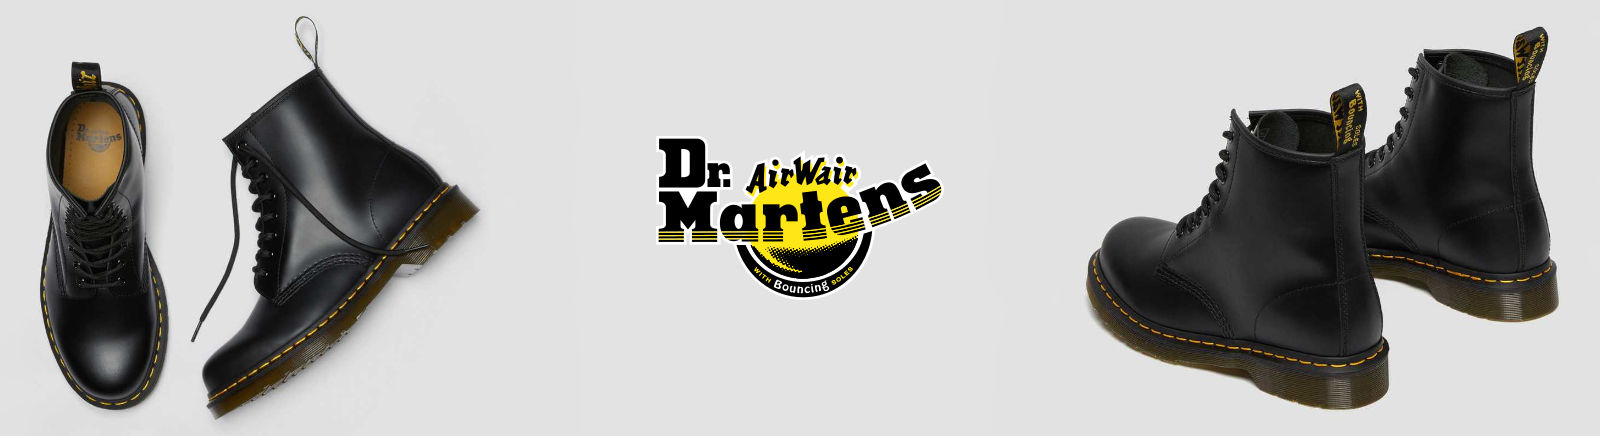 Dr. Martens Markenschuhe online entdecken im Juppen Schuhe Shop